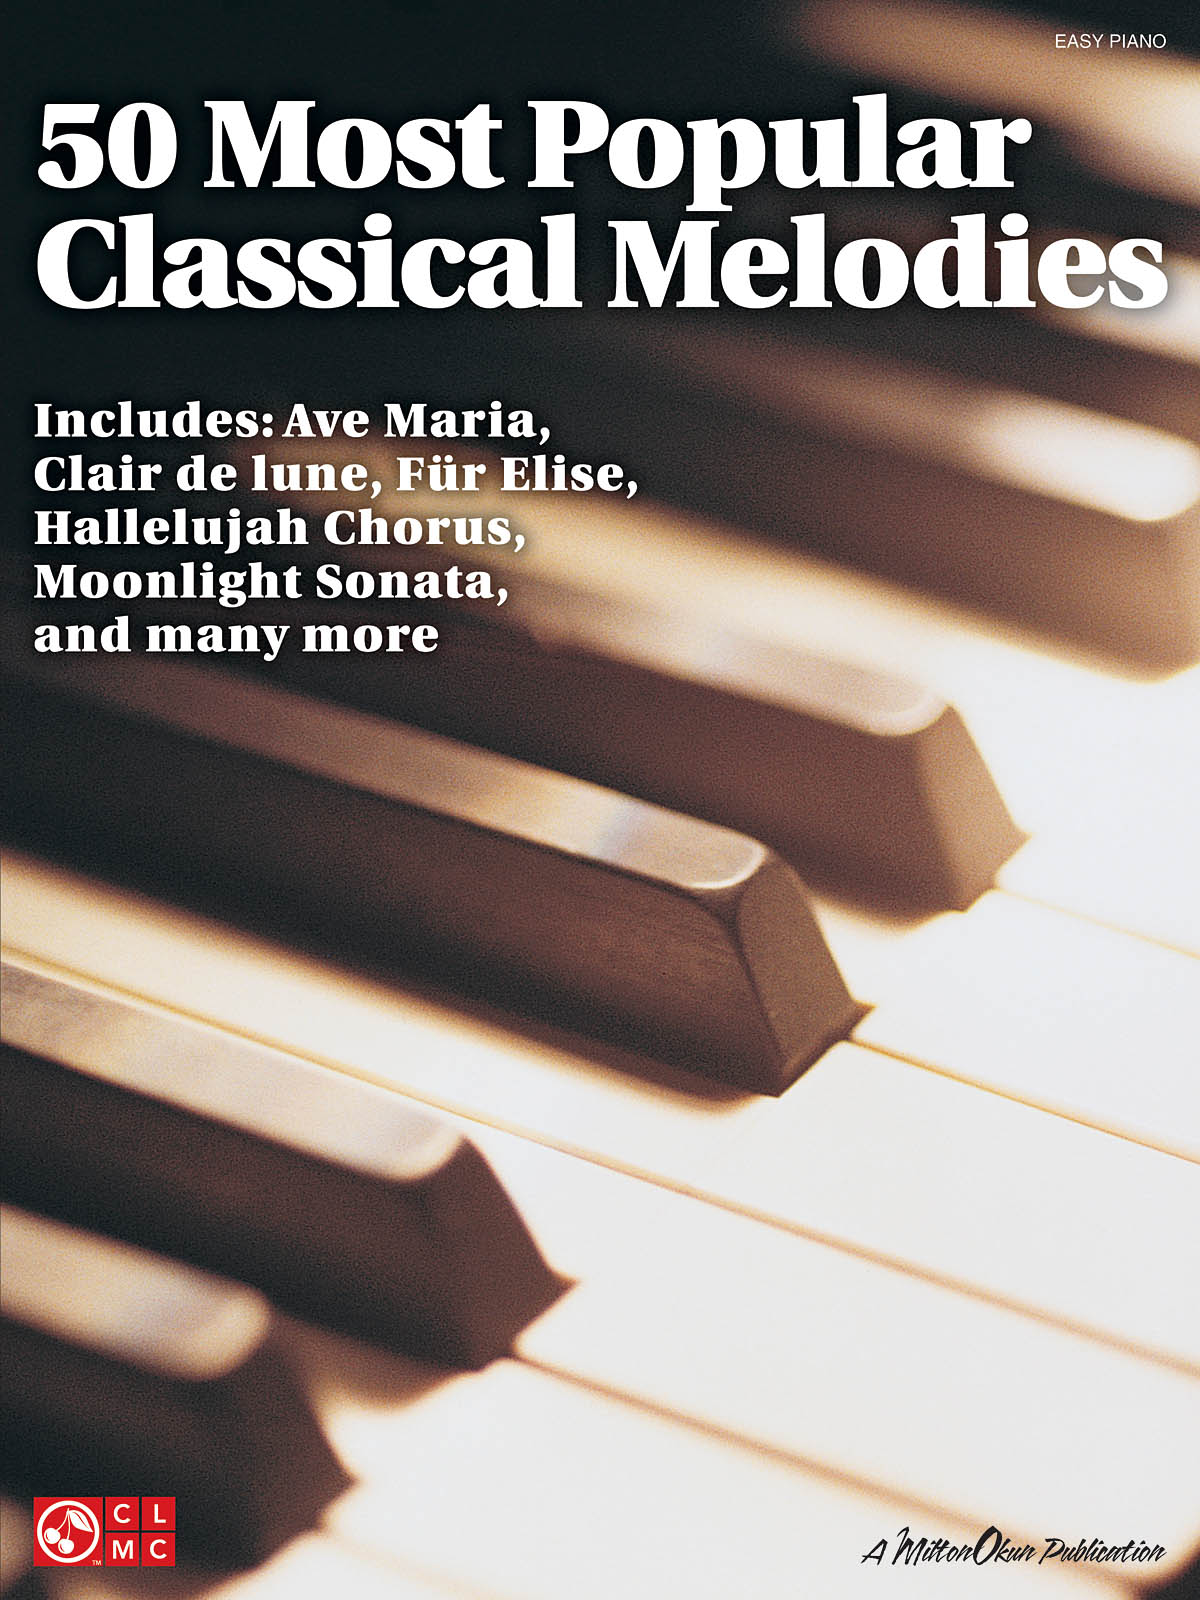 50 Most Popular Classical Melodies - jednoduché písně pro začátečníky